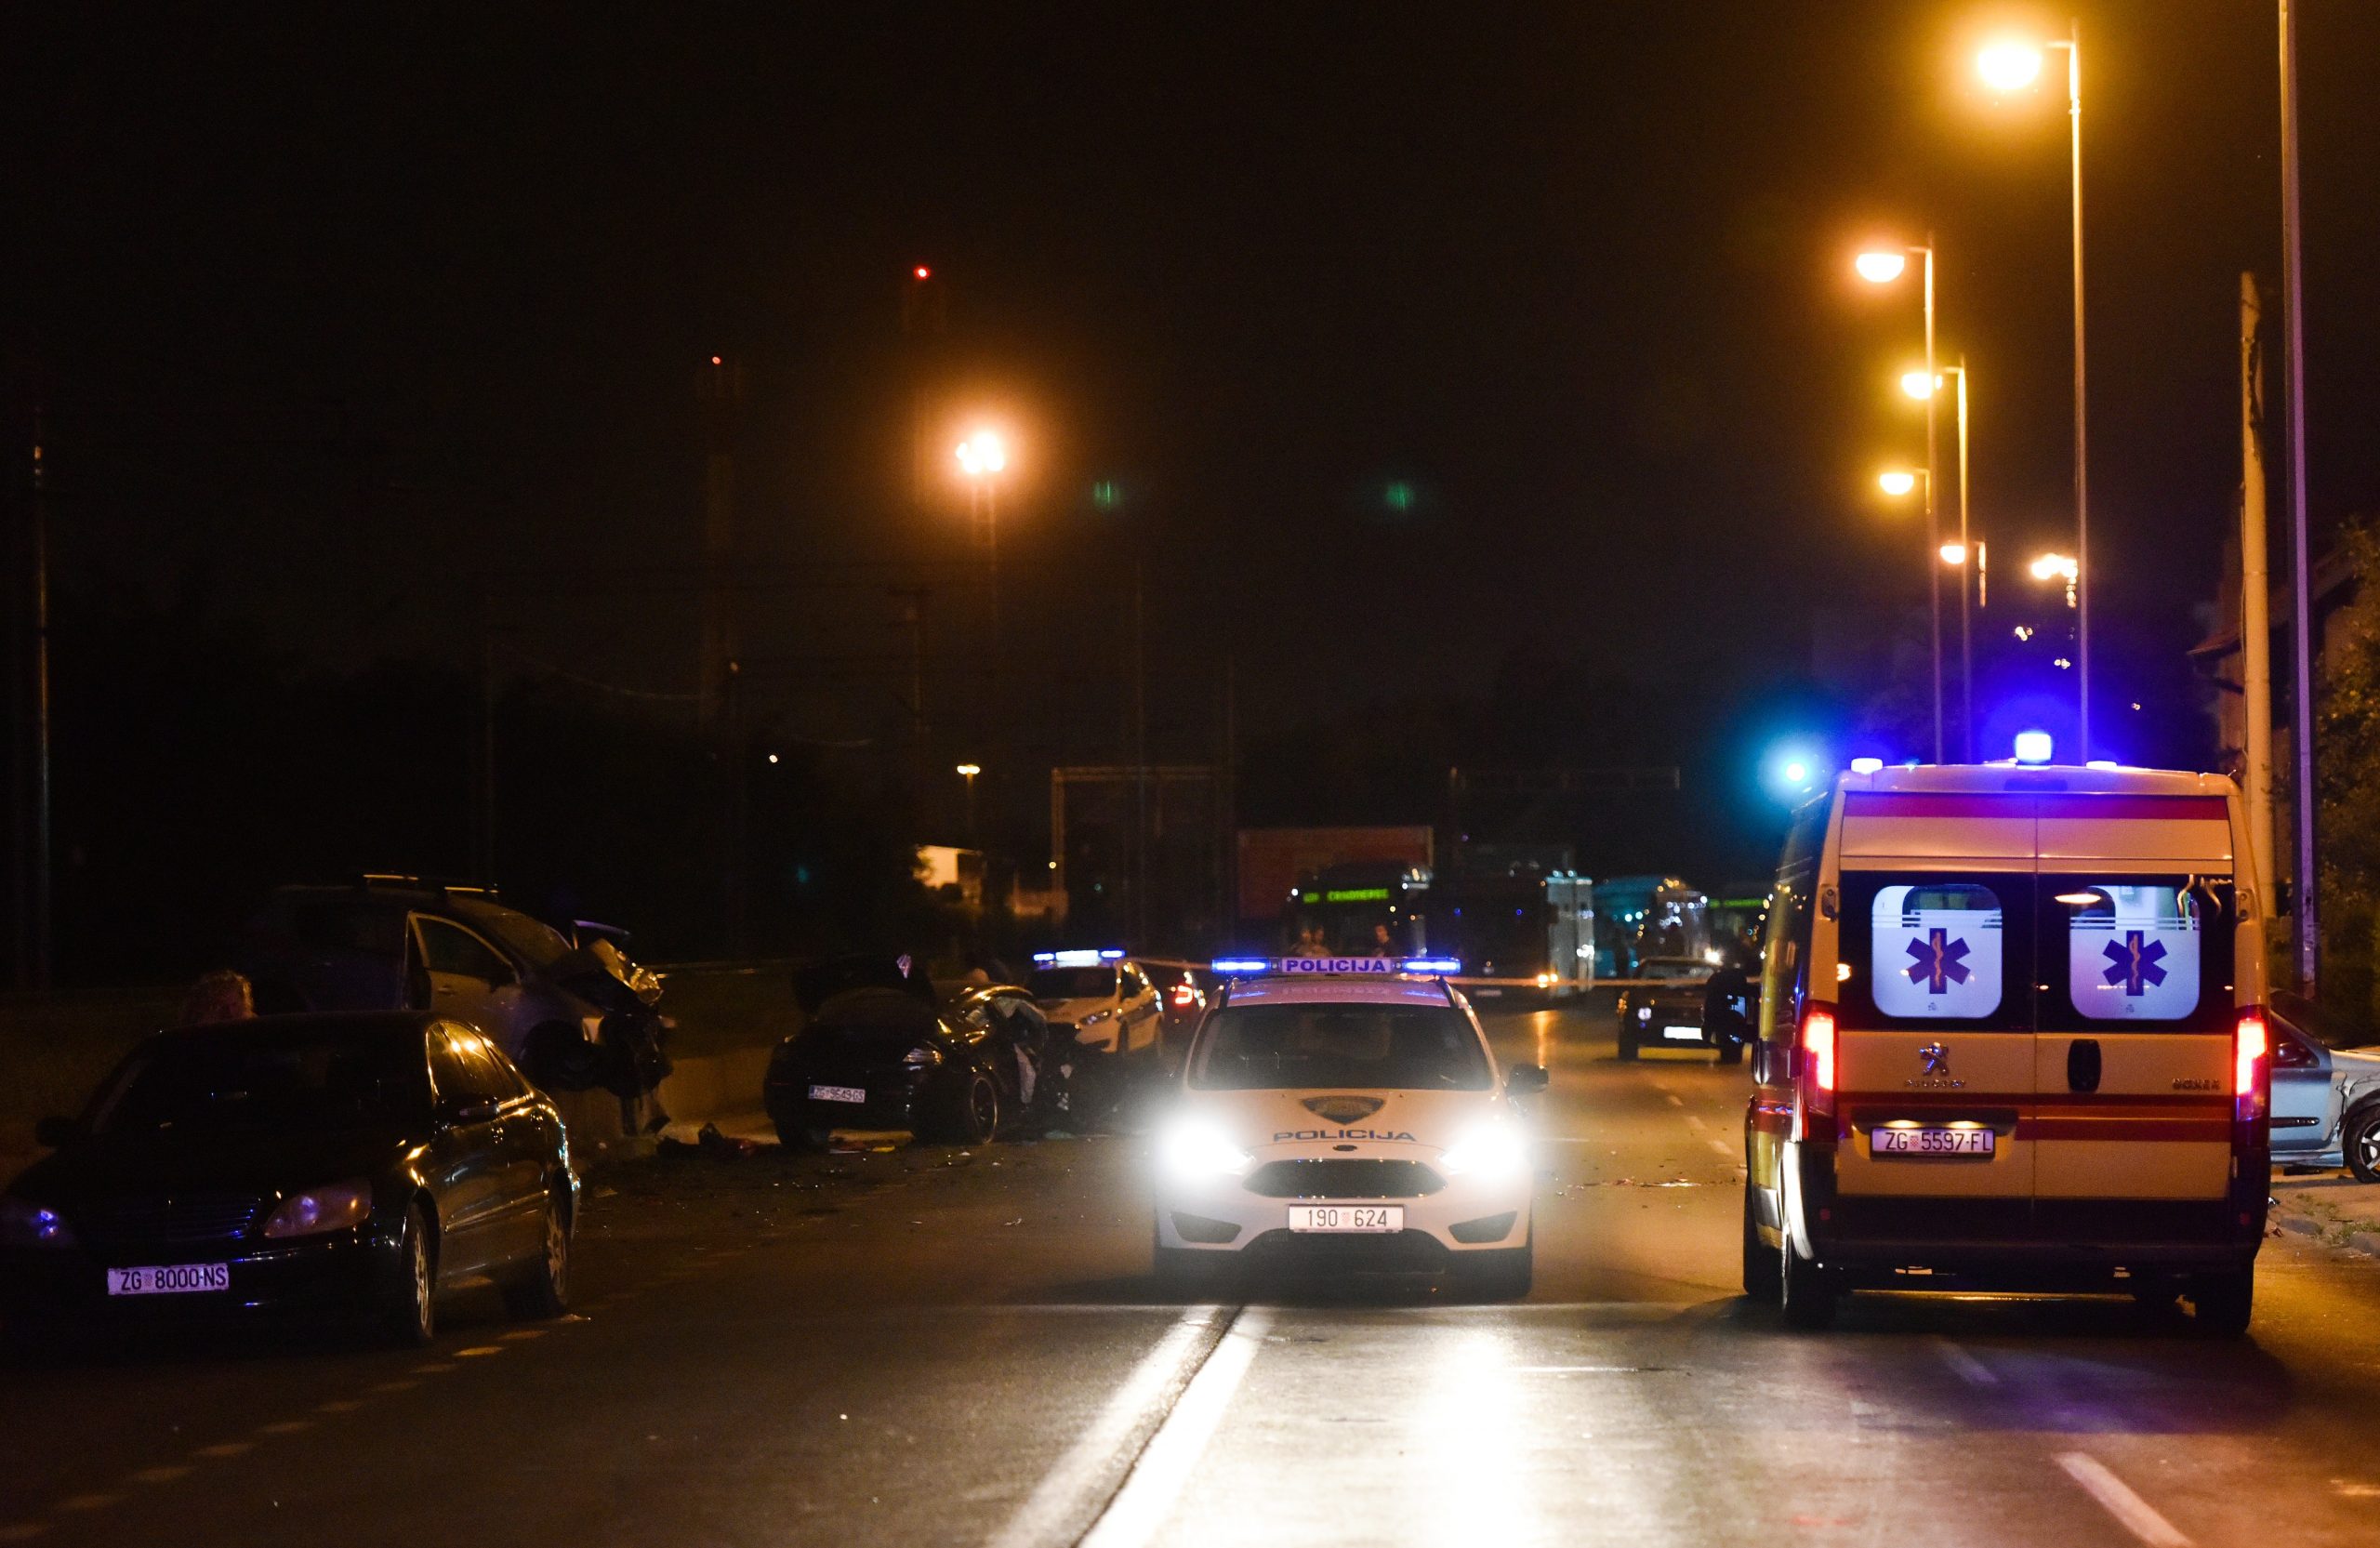 23.08.2018., Zagreb - Dvije osobe poginule su, a troje je ozlijedjeno u teskoj prometnoj nesreci do koje je doslo oko 21.10 u Ilici kod kucnog broja 424, izmedju Kustosije i Vrapca. Sudjelovala su cetiri vozila, od kojih je jedno planulo. Promet je na tom dijelu Ilice u potpunosti obustavljen u oba smjera. 
Photo: Davor Visnjic/PIXSELL